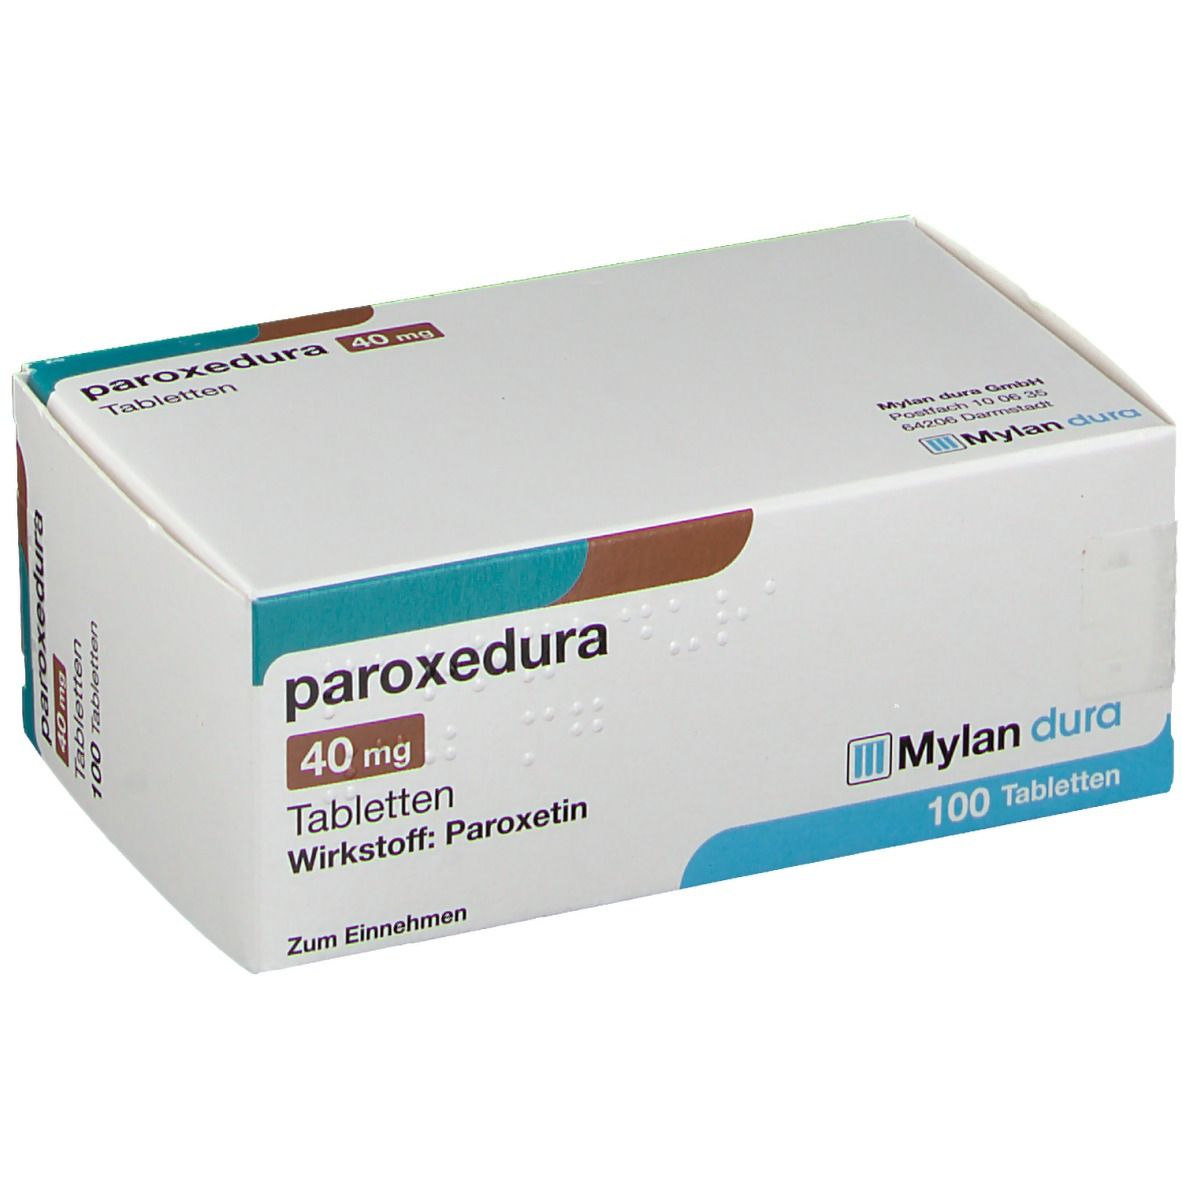 Paroxedura® 40 mg